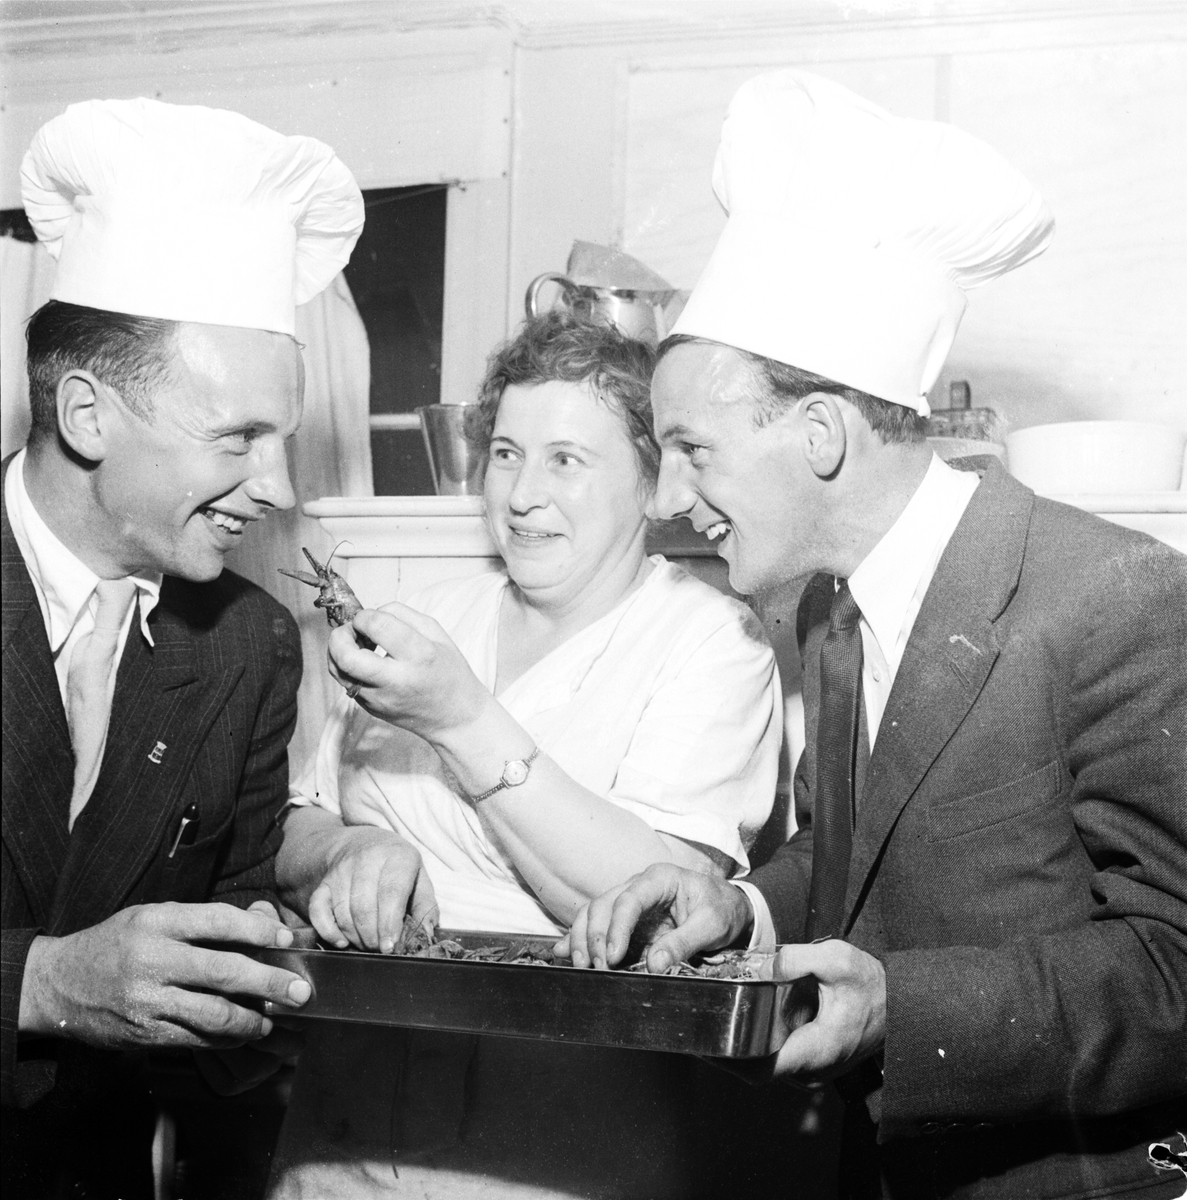 Kvinna och två män vid fat med kräftor, sannolikt Uppland 1948